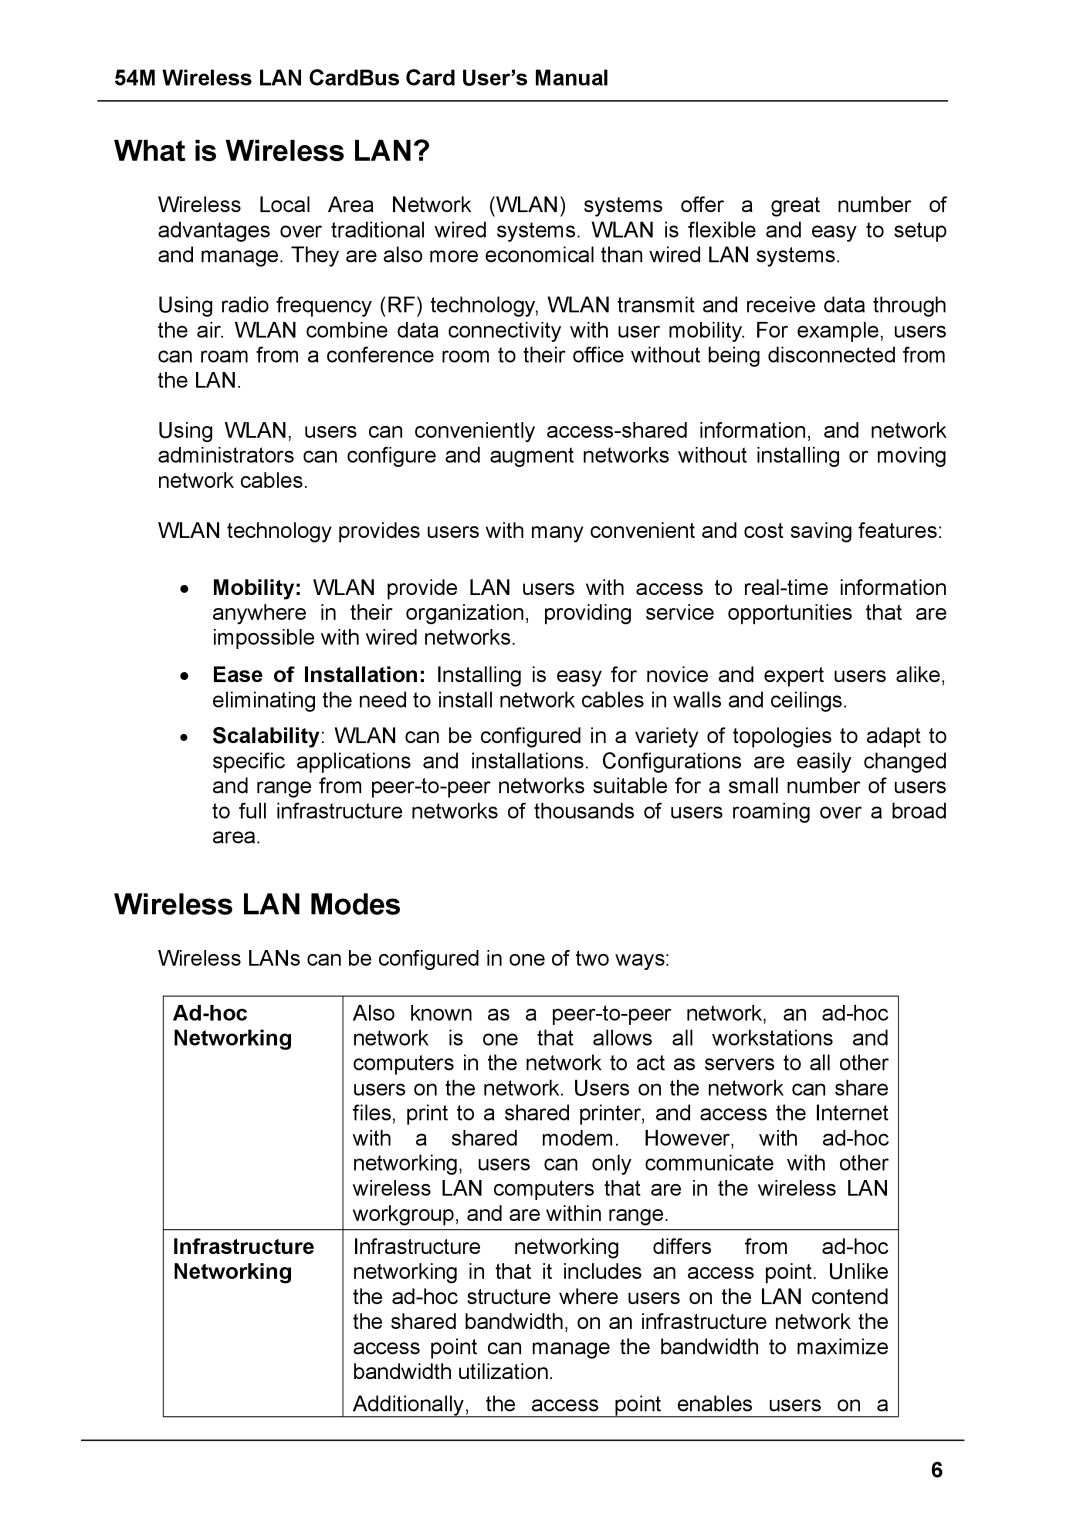 Boca Research 54M user manual What is Wireless LAN?, Wireless LAN Modes 